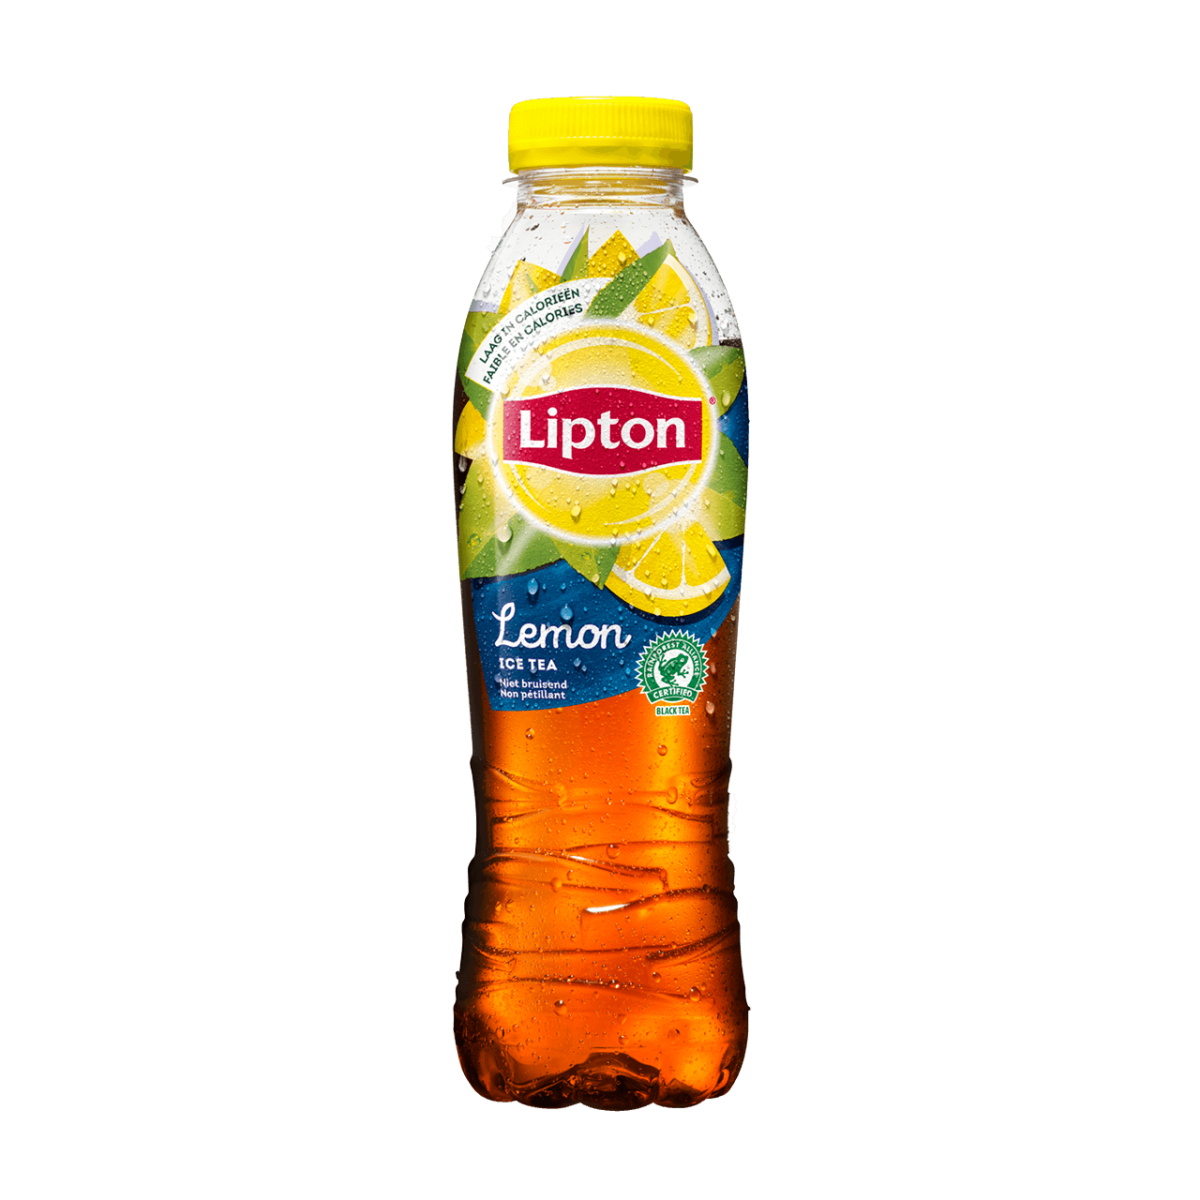 Без липтона. Lipton Ice Tea 0.5. Липтон чай лимон 0.5. Чай Липтон 0.5. Липтон зеленый чай с лимоном.